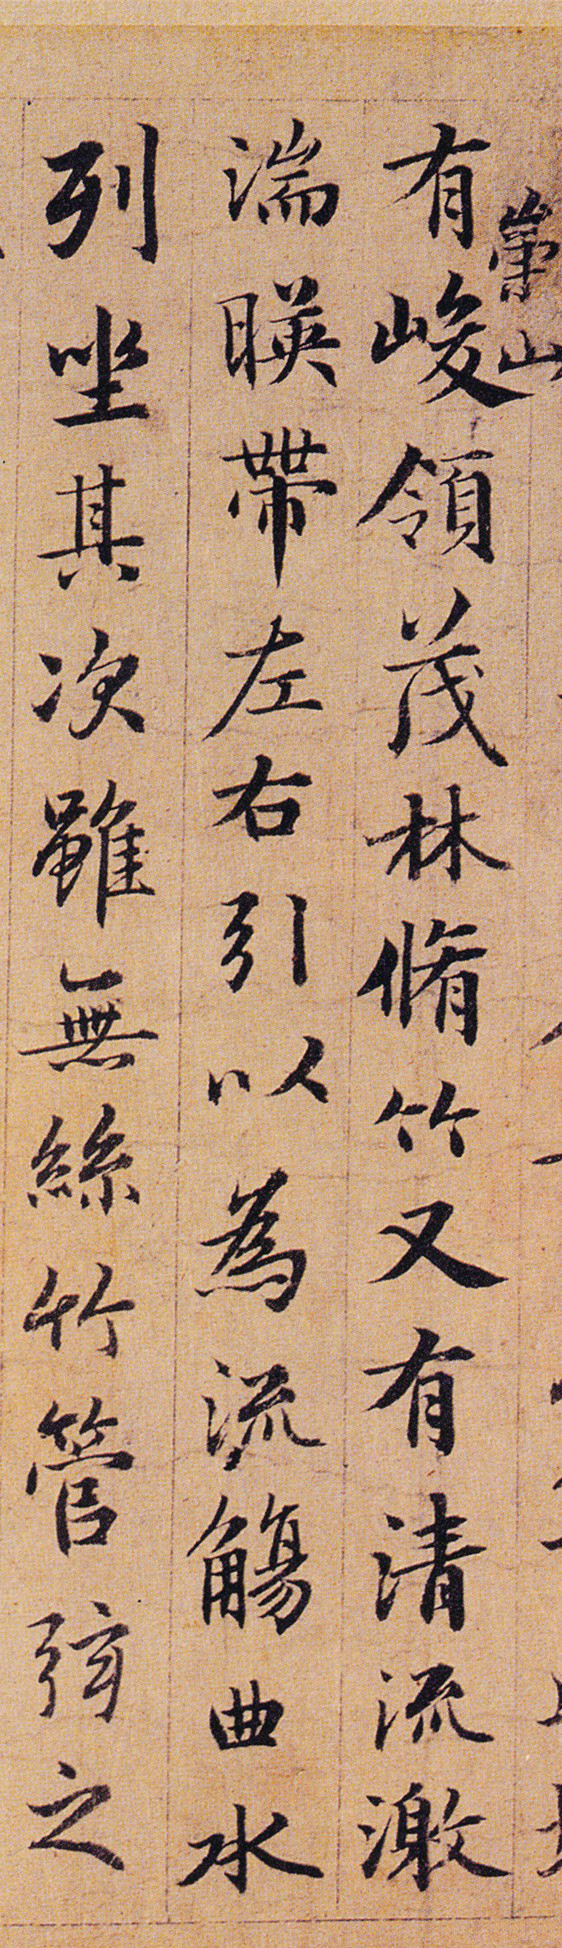 原创赵孟頫临摹《兰亭序》,字体写出艺术美!大家能给多少分!